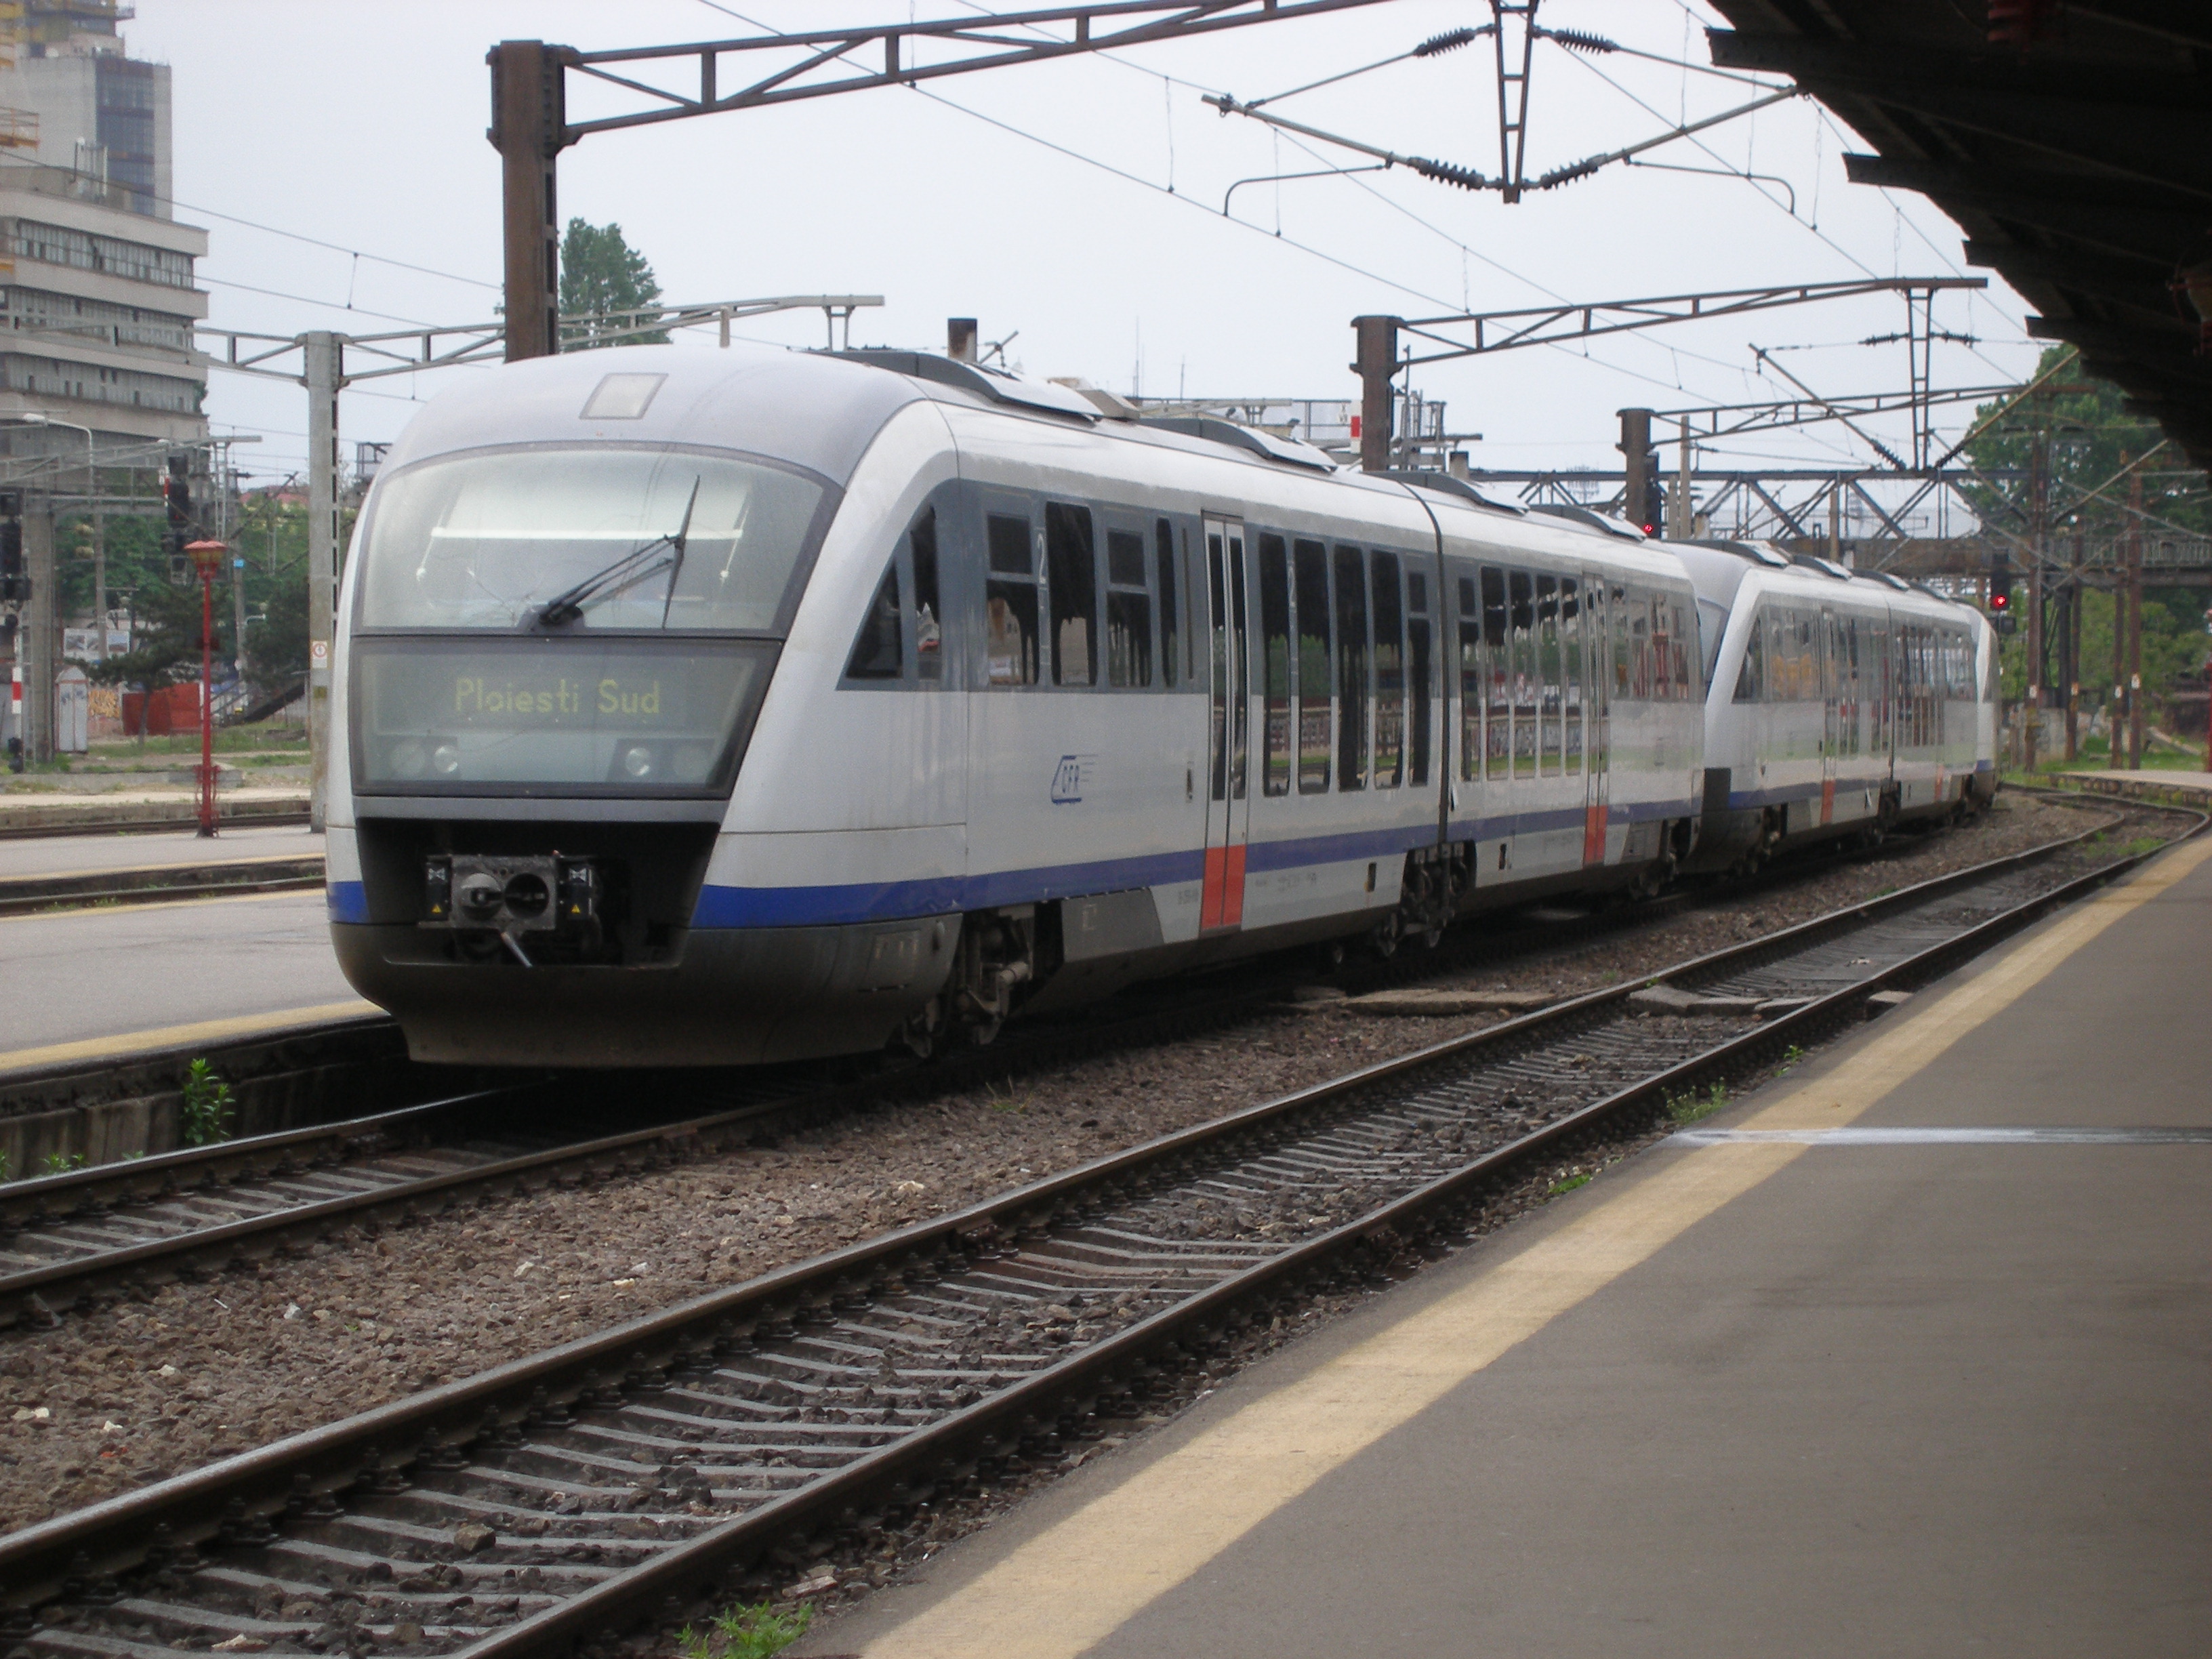 A CFR új villamos motorvonatai a dízelüzemű Siemens Desirókat fogják leváltani a legkorszerűbb vasúti járműveiként. A román vasúttársaság lépéskényszerben van, így negyven plusz negyven villamos motorvonatra írtak ki tendert (fotó: T. Hámori Ferenc)